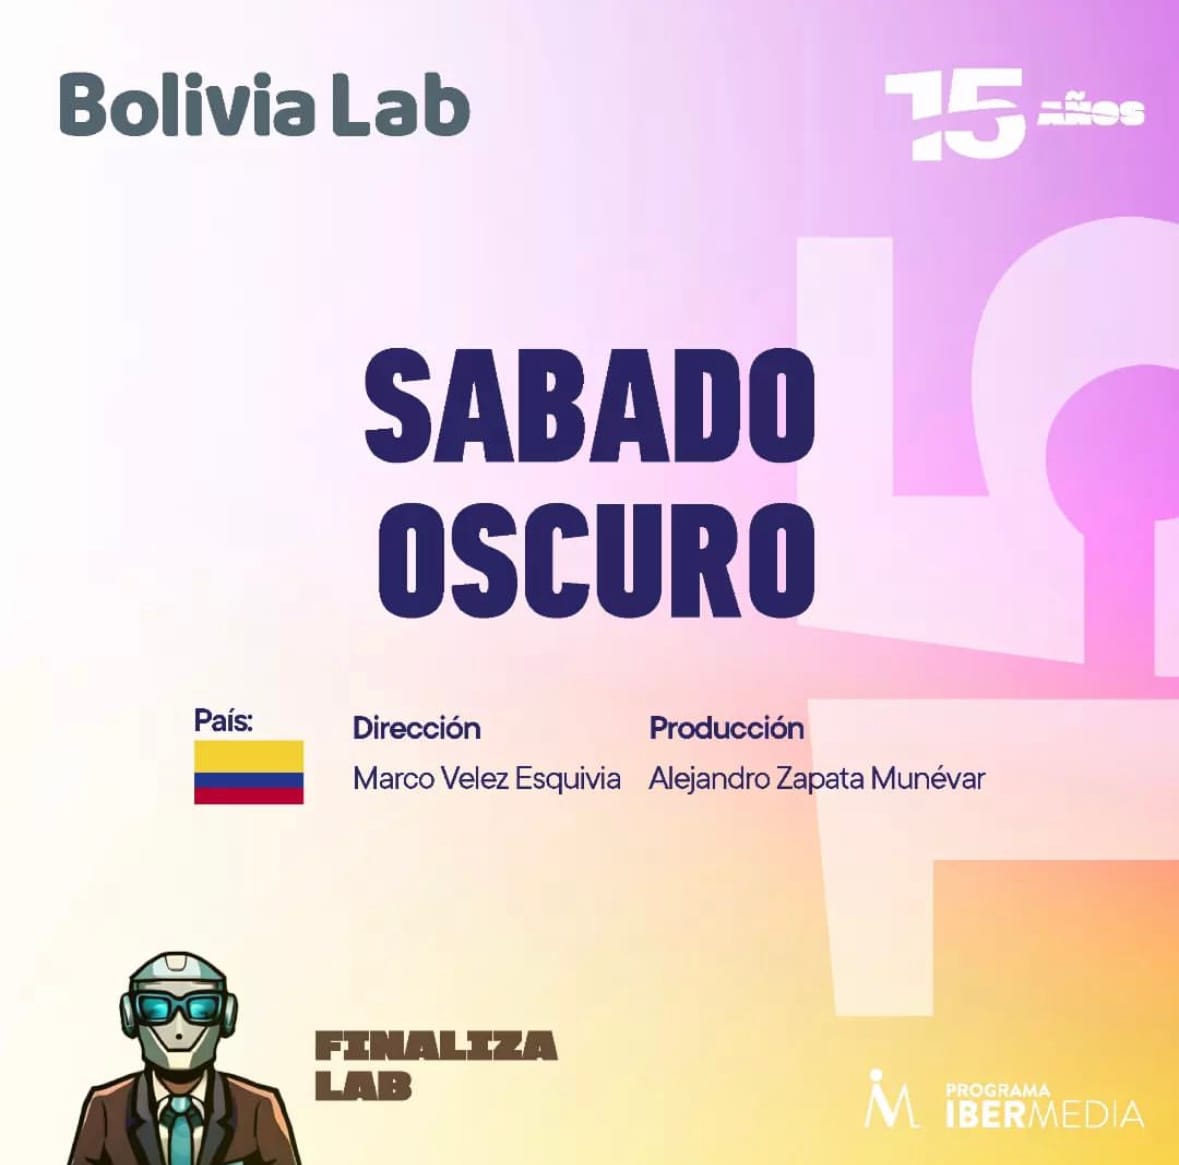 Sábado Oscuro seleccionado para el Bolivia Lab